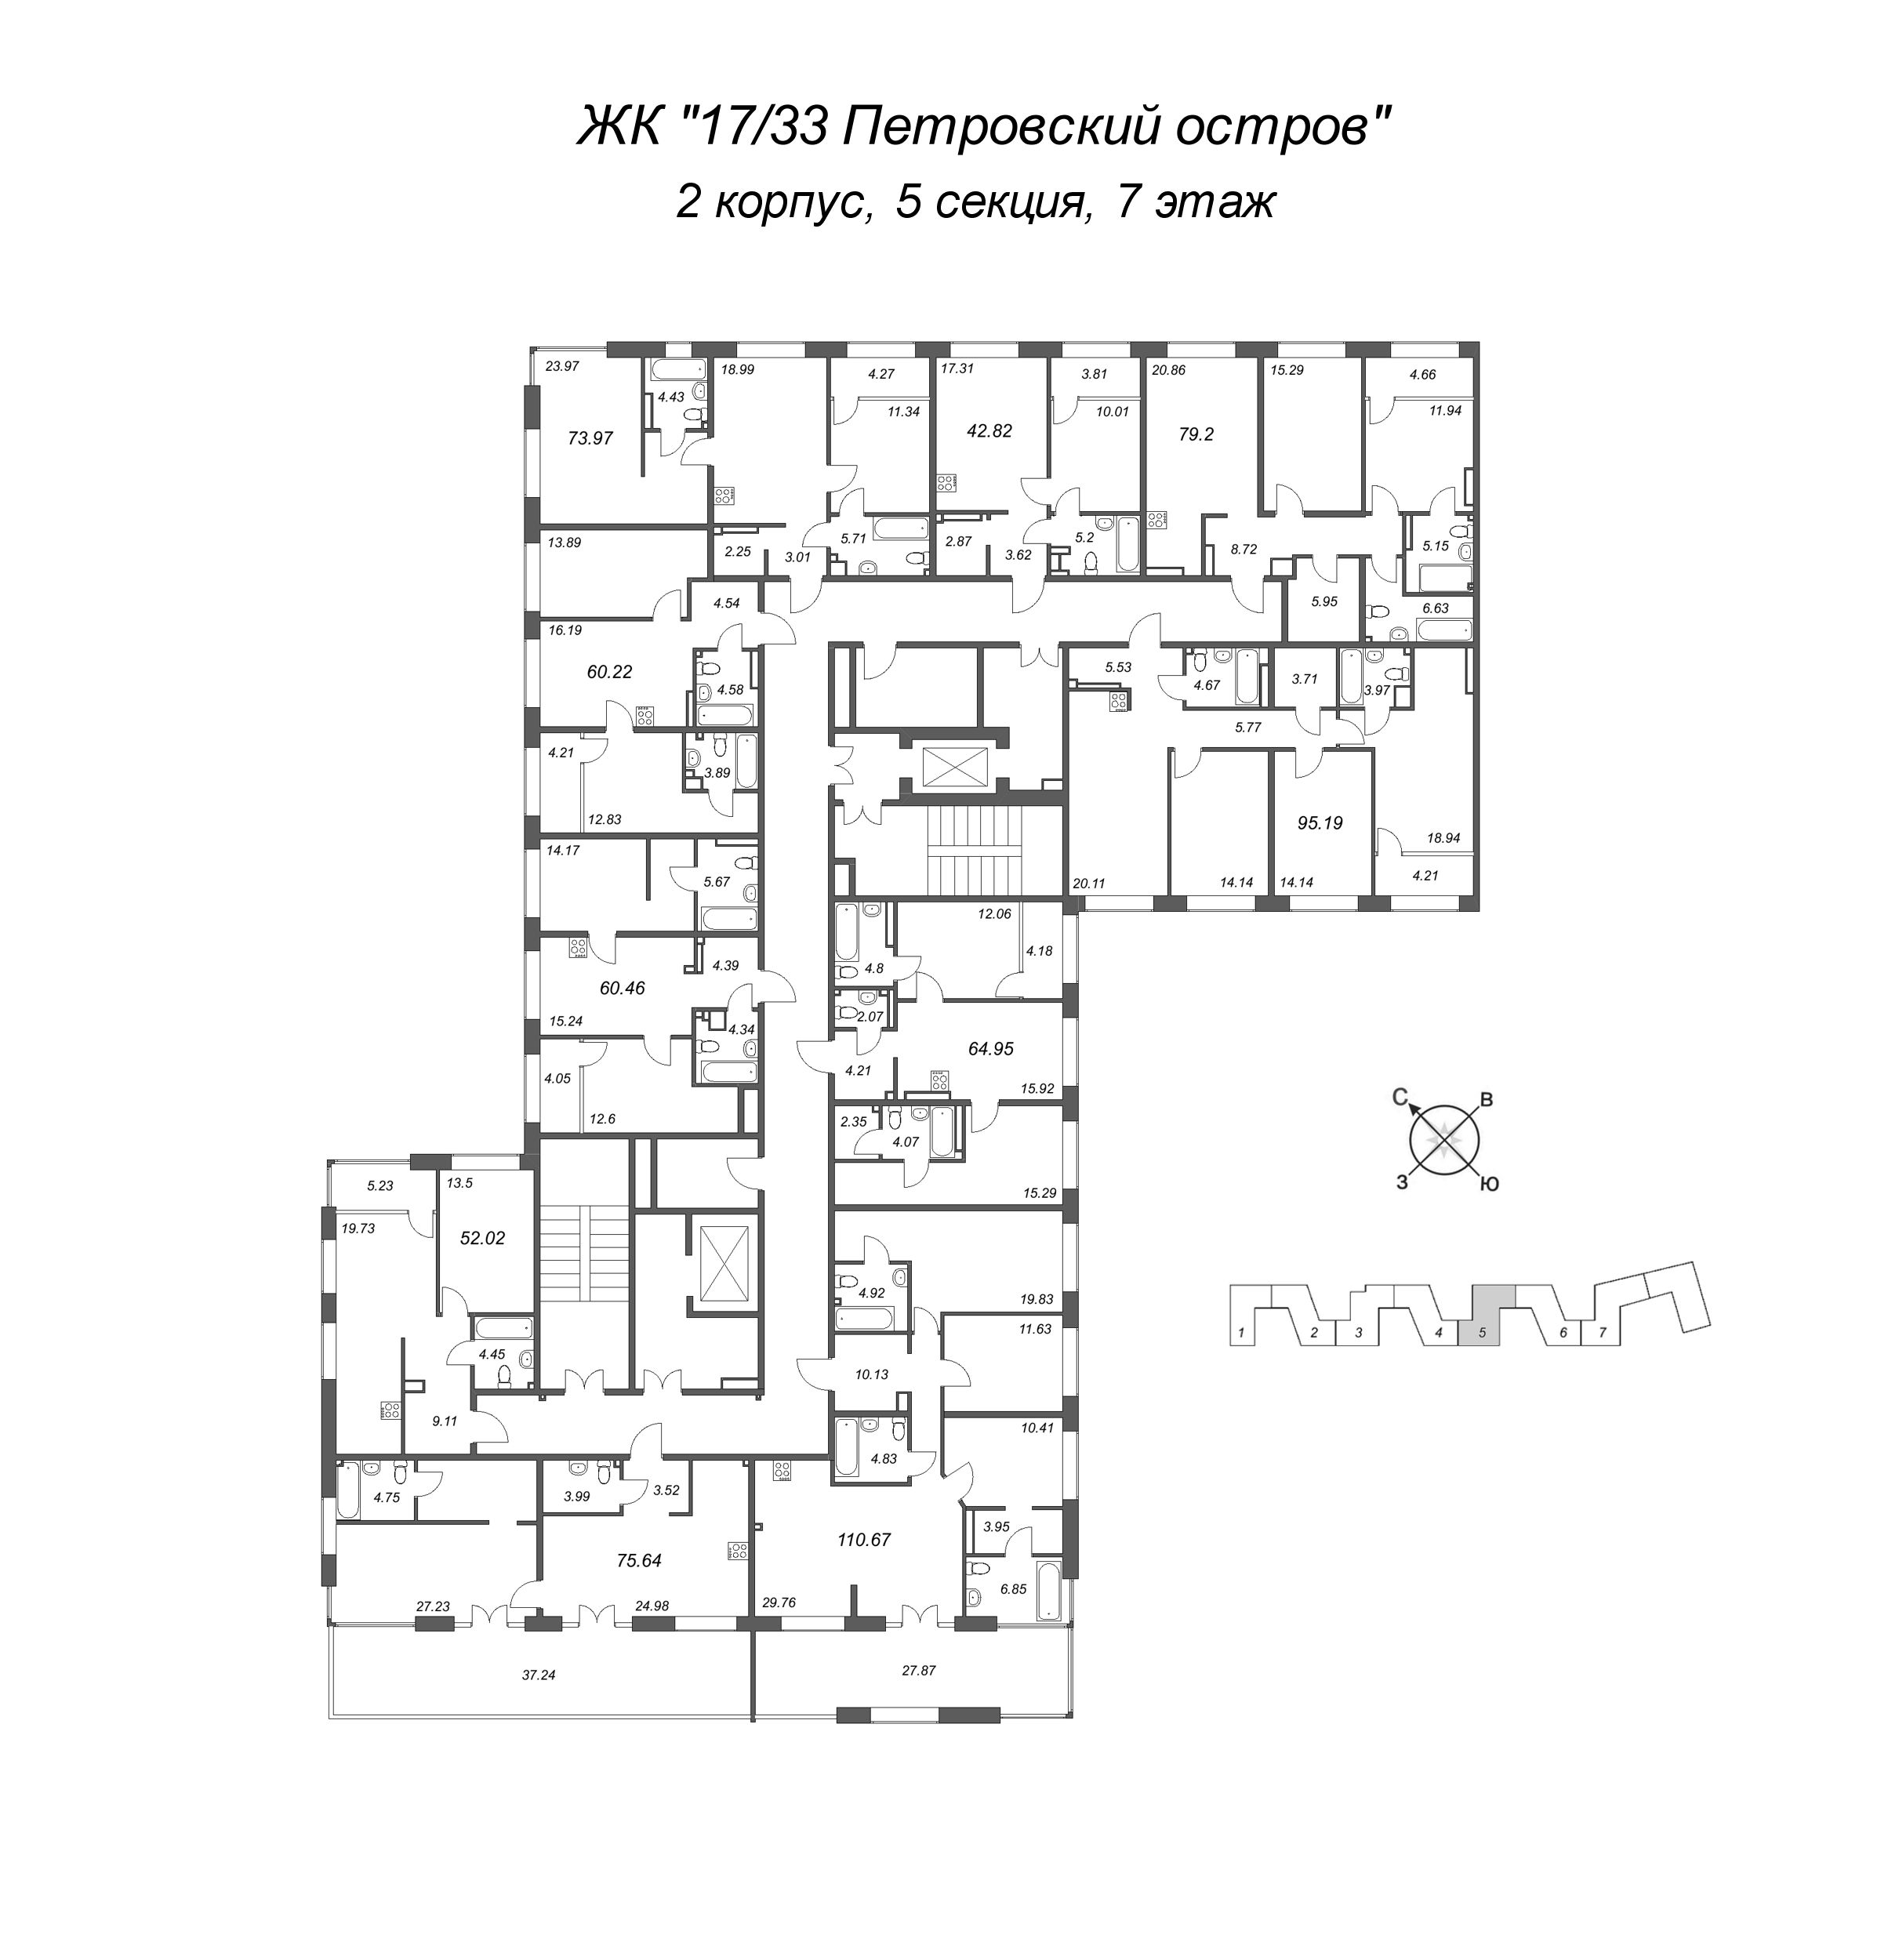 3-комнатная (Евро) квартира, 79.2 м² в ЖК "17/33 Петровский остров" - планировка этажа